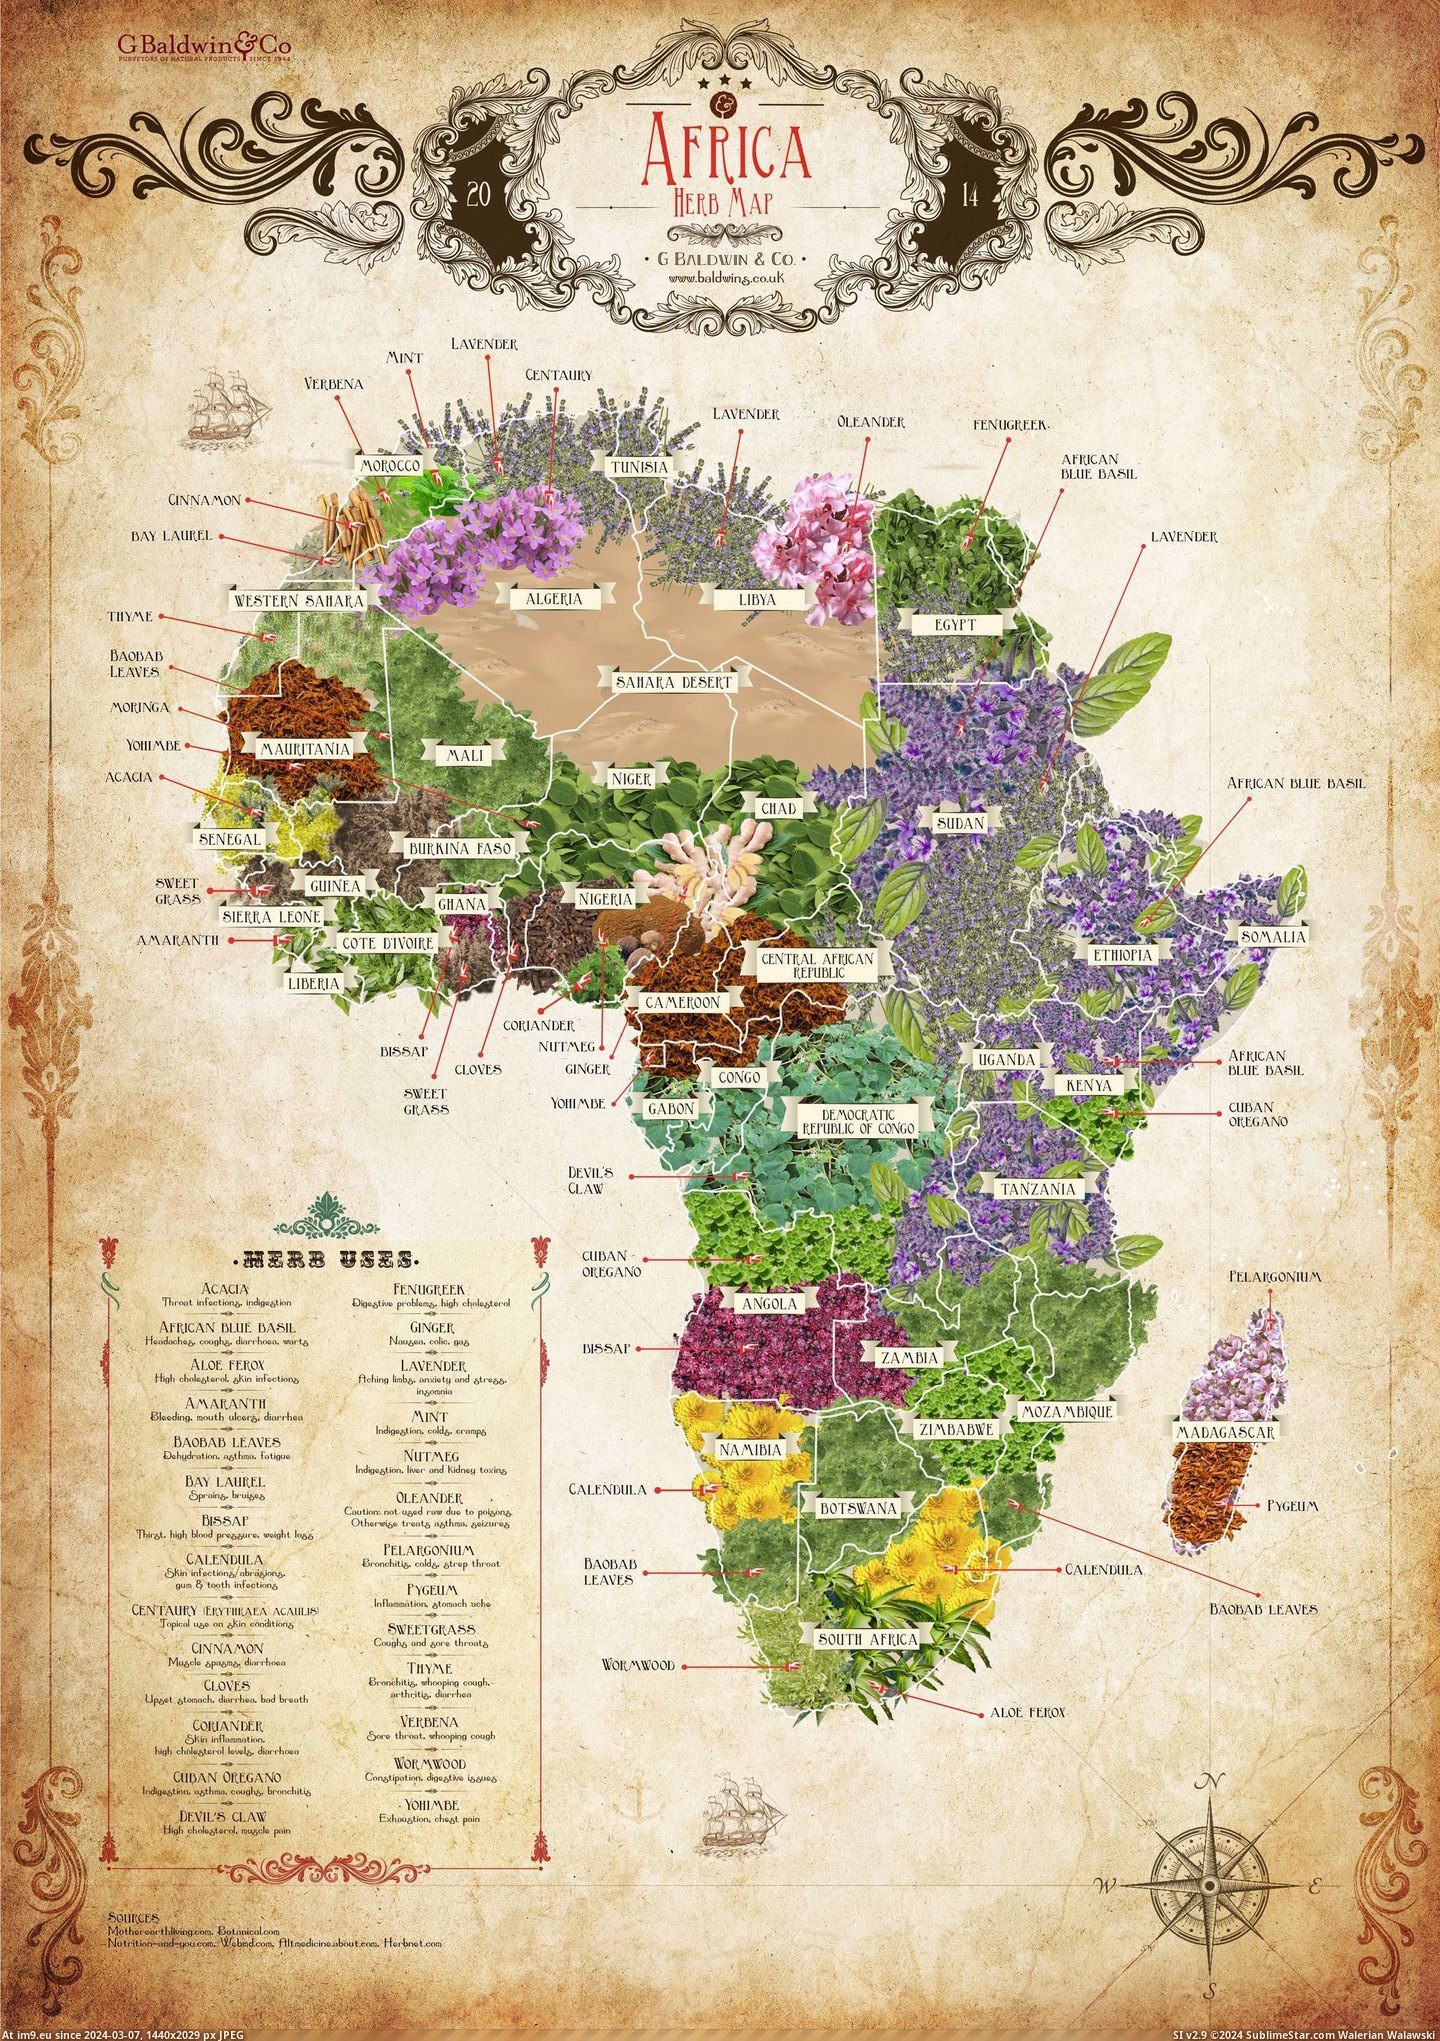 #Map #Herb #Africa [Mapporn] Africa Herb Map [2232x3157] Pic. (Bild von album My r/MAPS favs))